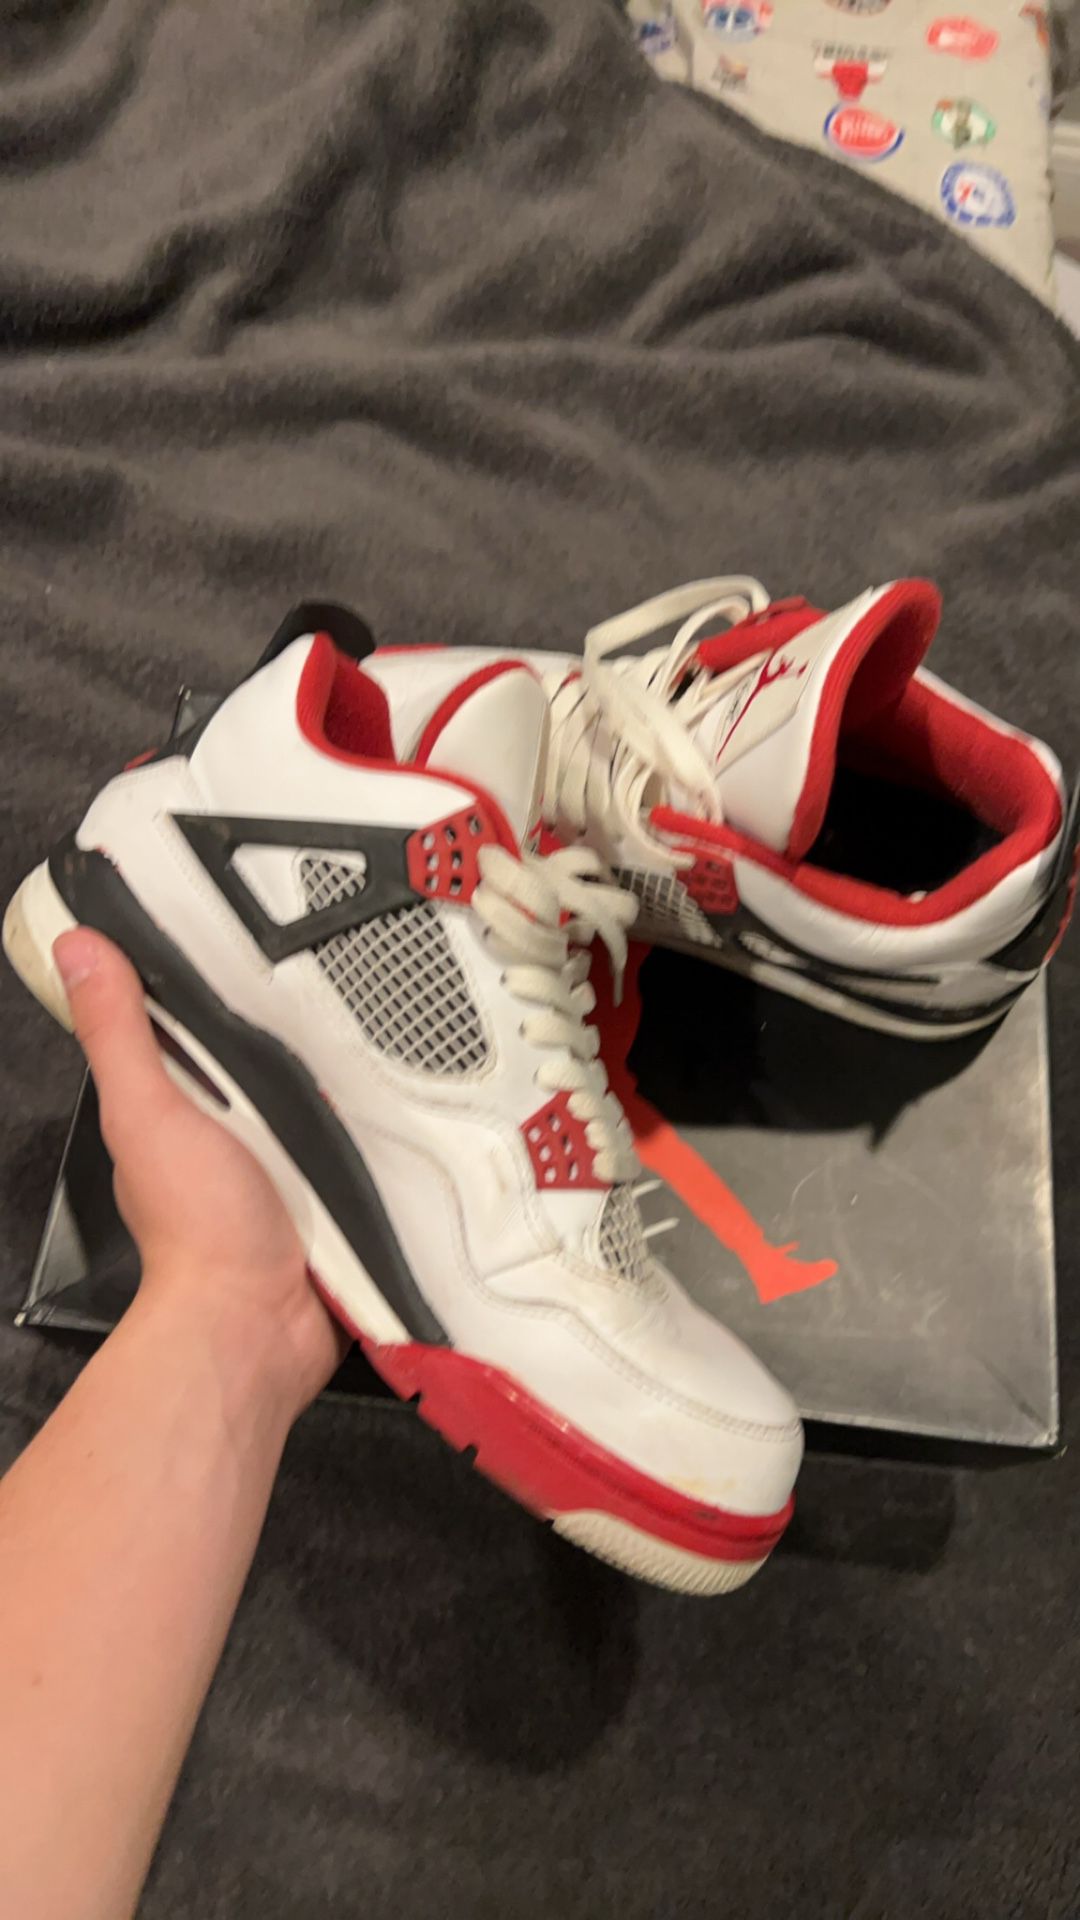 Jordan 4 Fire Red Size 9.5 